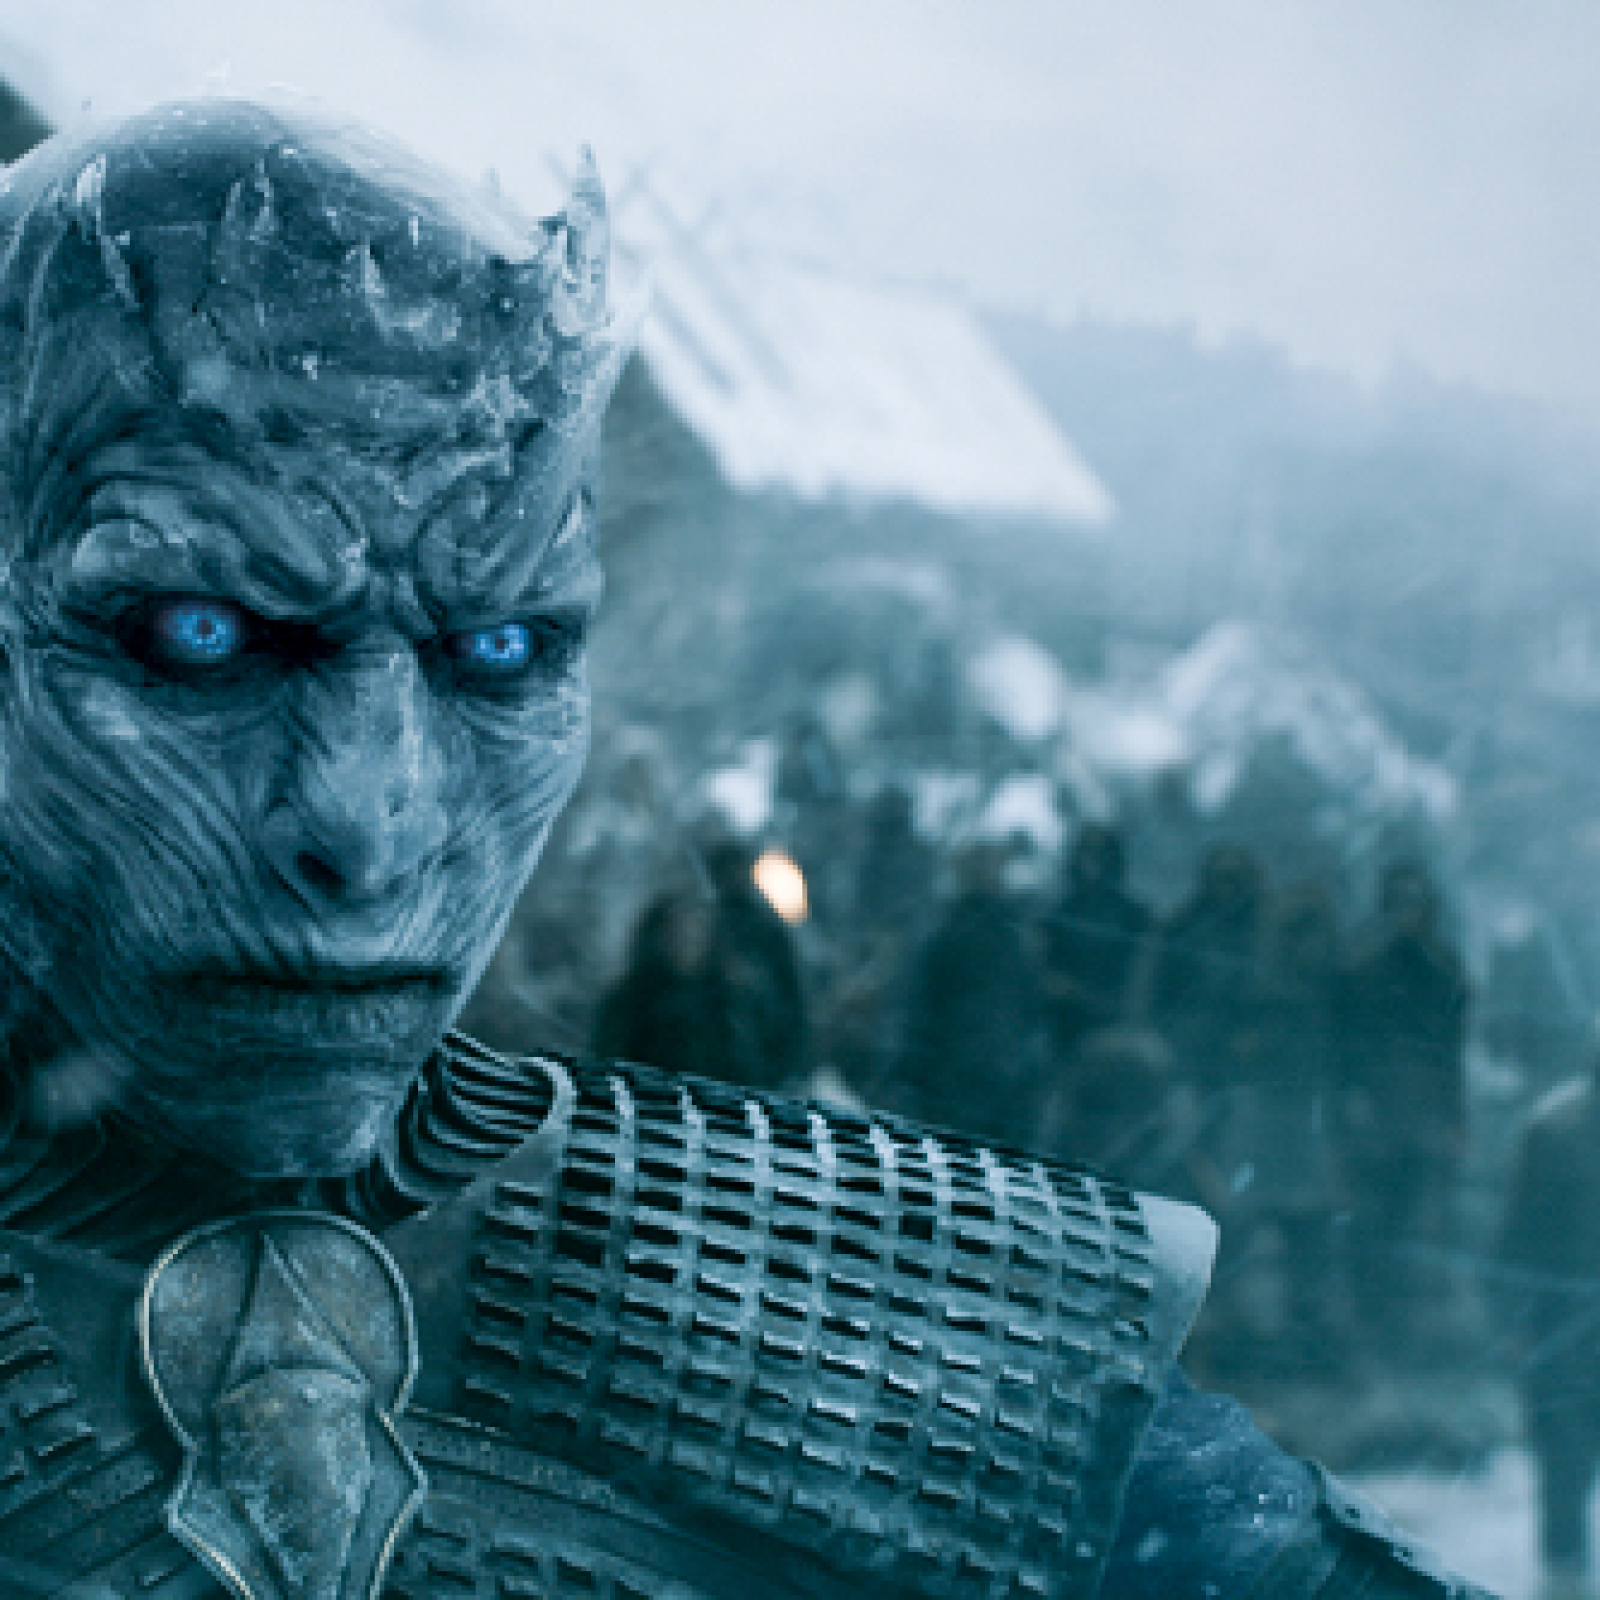 vertel het me mengsel Middeleeuws Game of Thrones' Season 8: What Does the White Walker Symbol Mean?